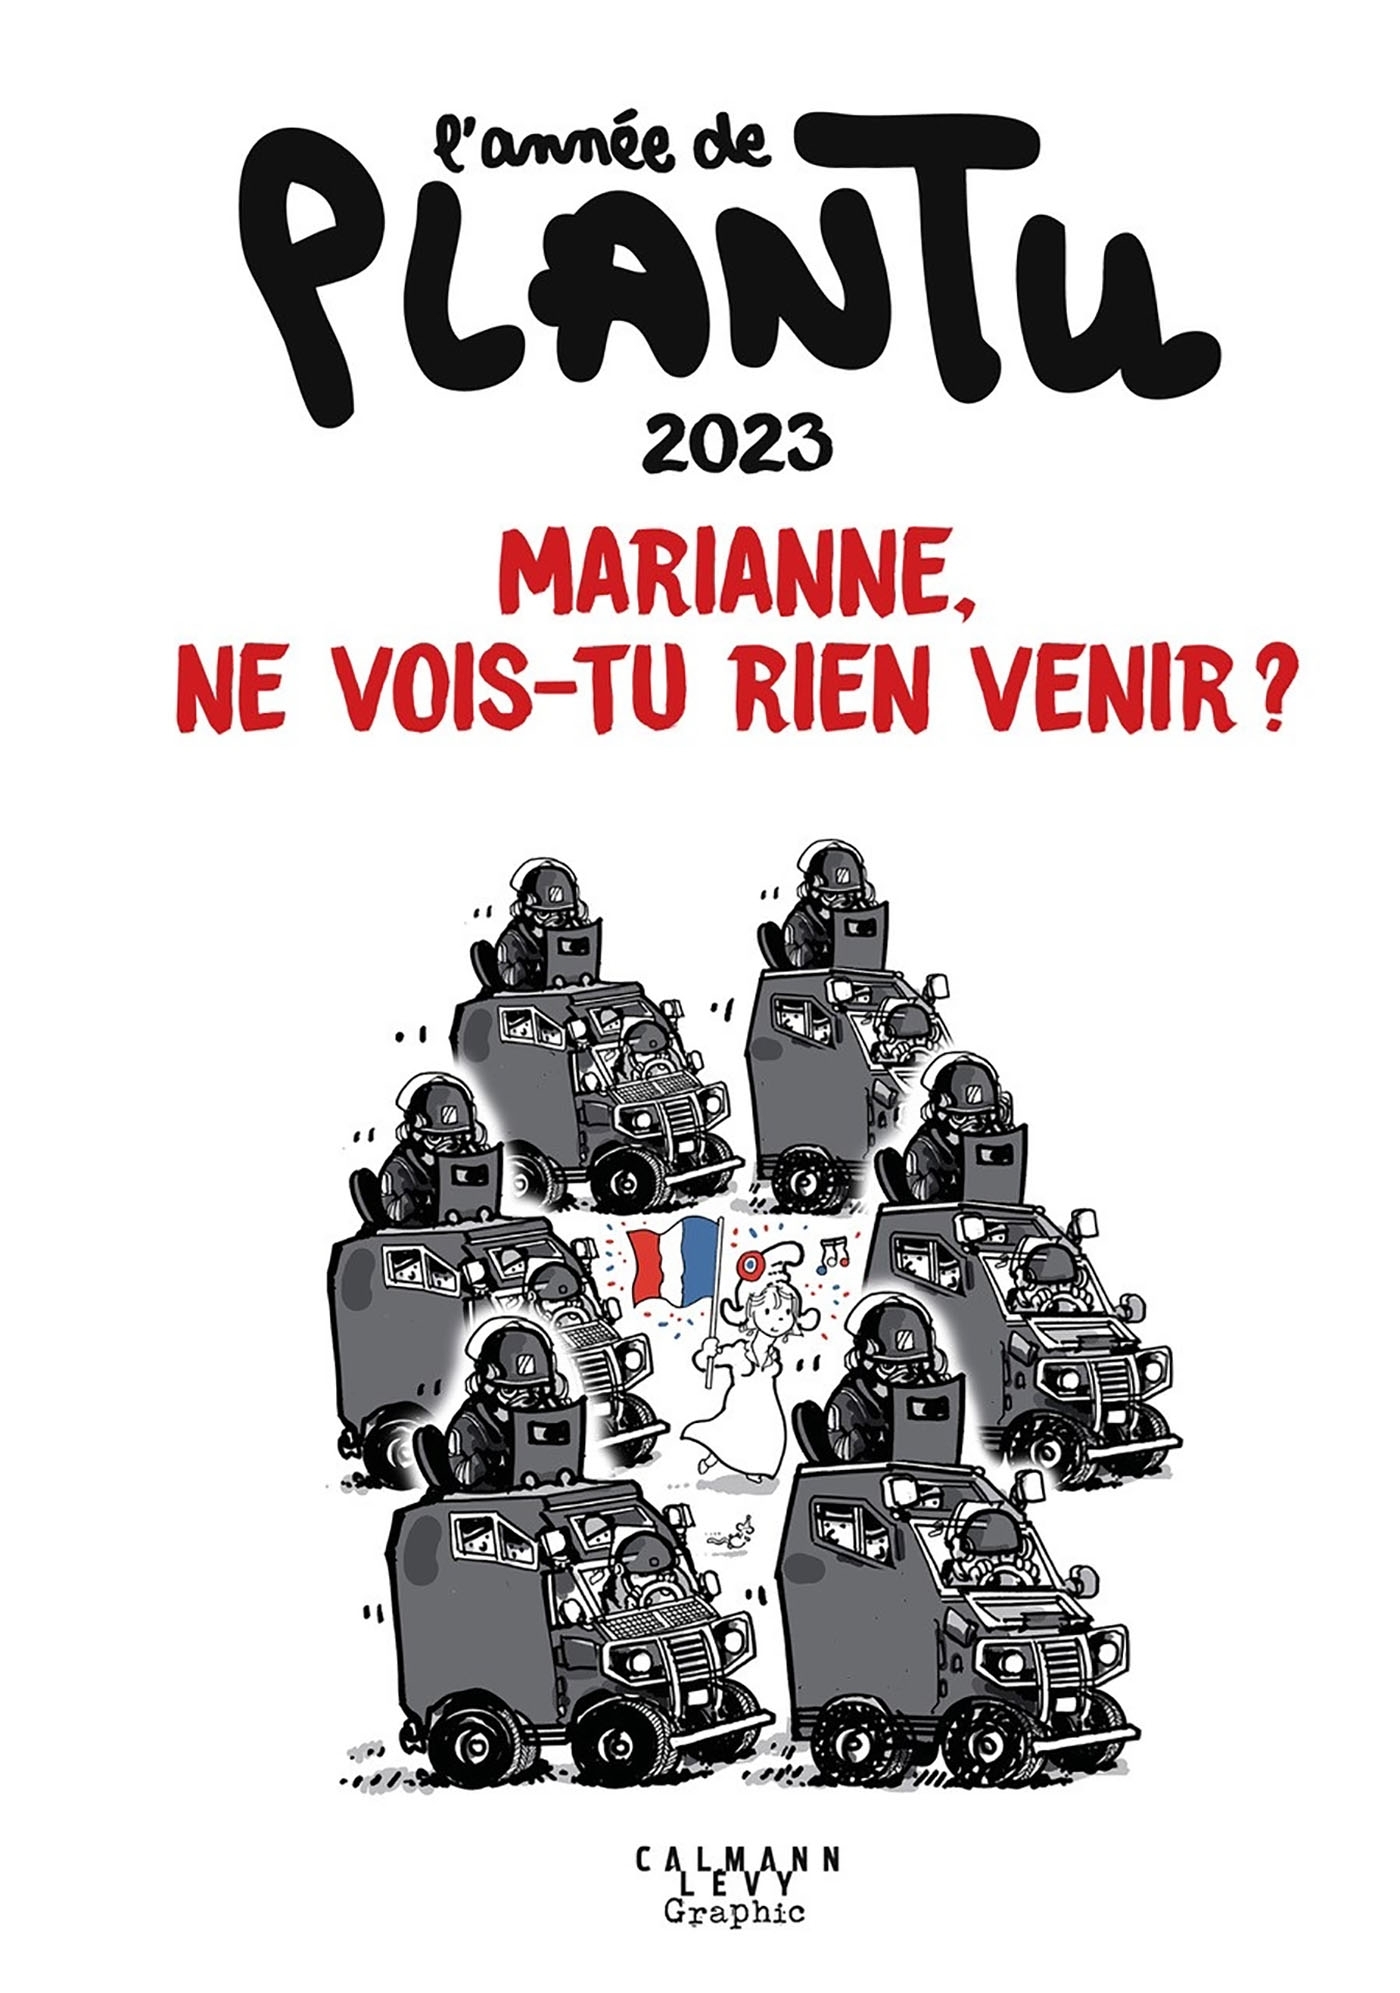 2023, L'Année de Plantu 2023, Marianne, ne vois-tu rien venir